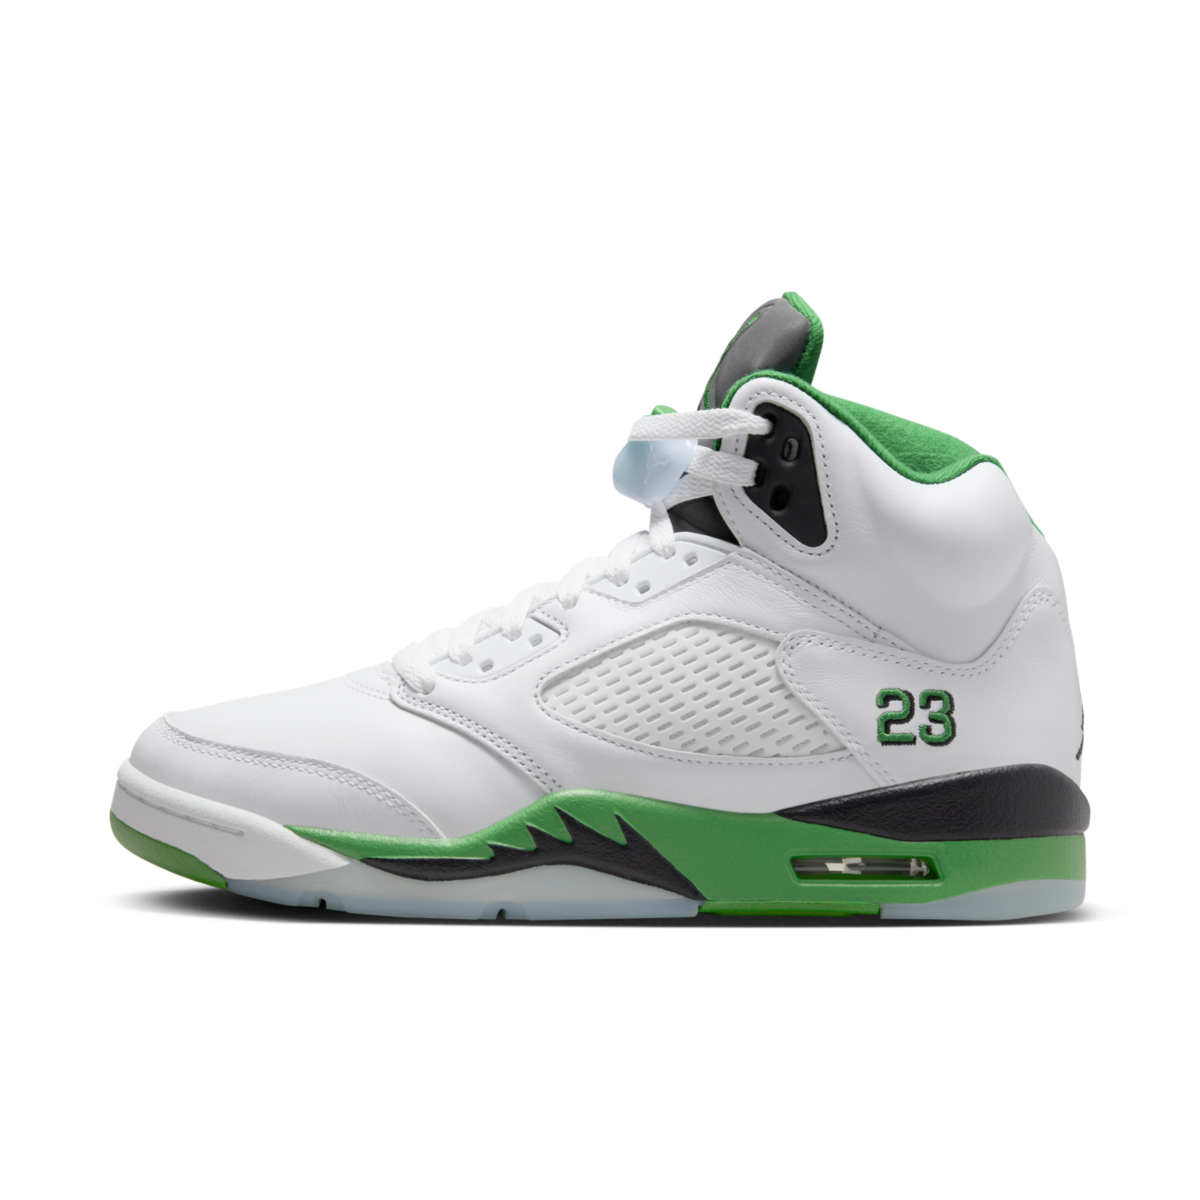 Air Jordan 5 Retro "Lucky Green" W